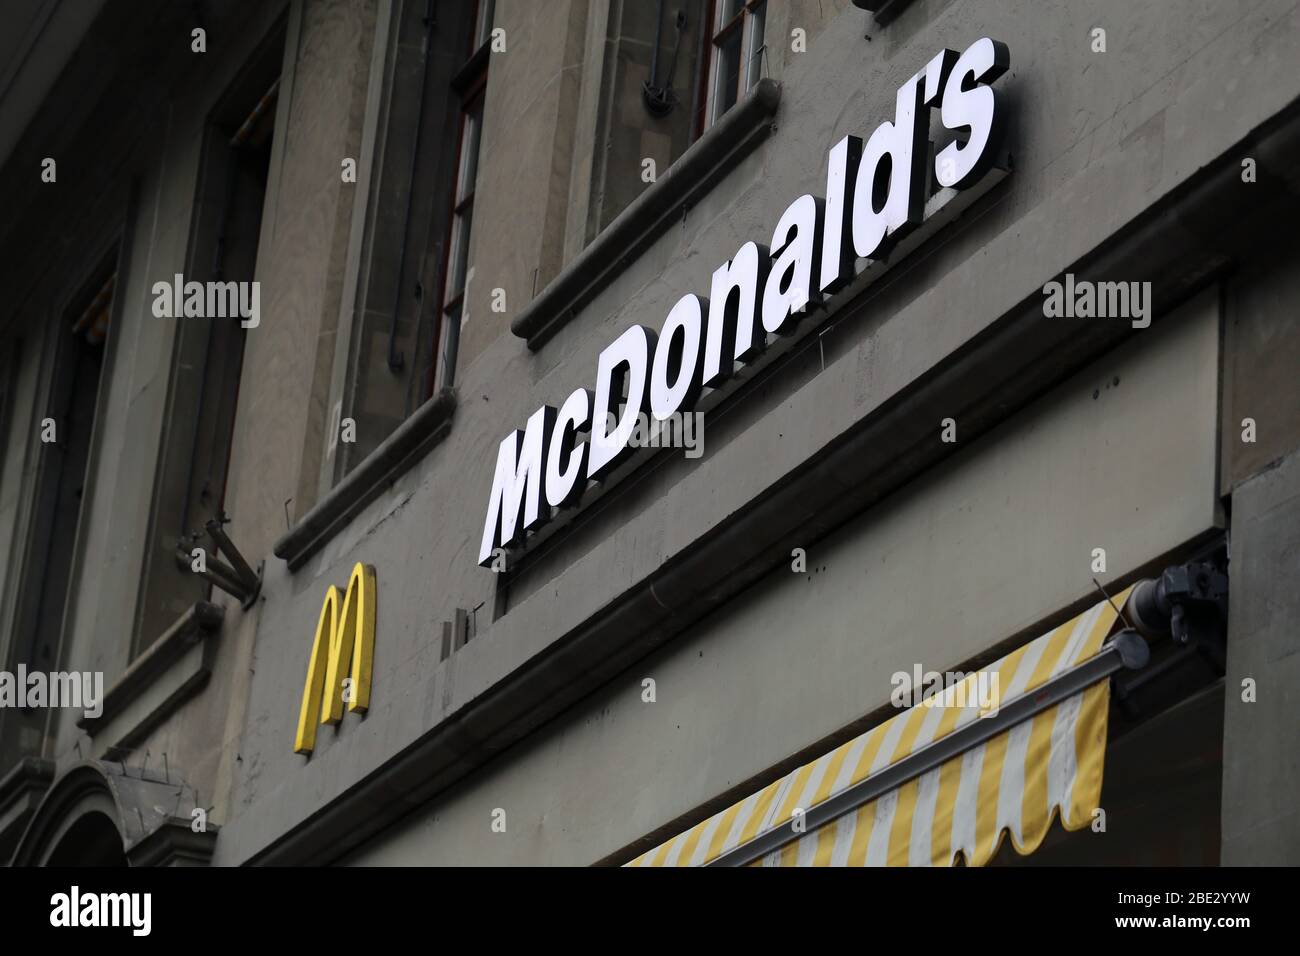 Logo de McDonald's sur un mur d'un ancien bâtiment situé dans le centre-ville de Berne, Suisse, mars 2020. McDonald's est une chaîne de restauration rapide américaine. Banque D'Images